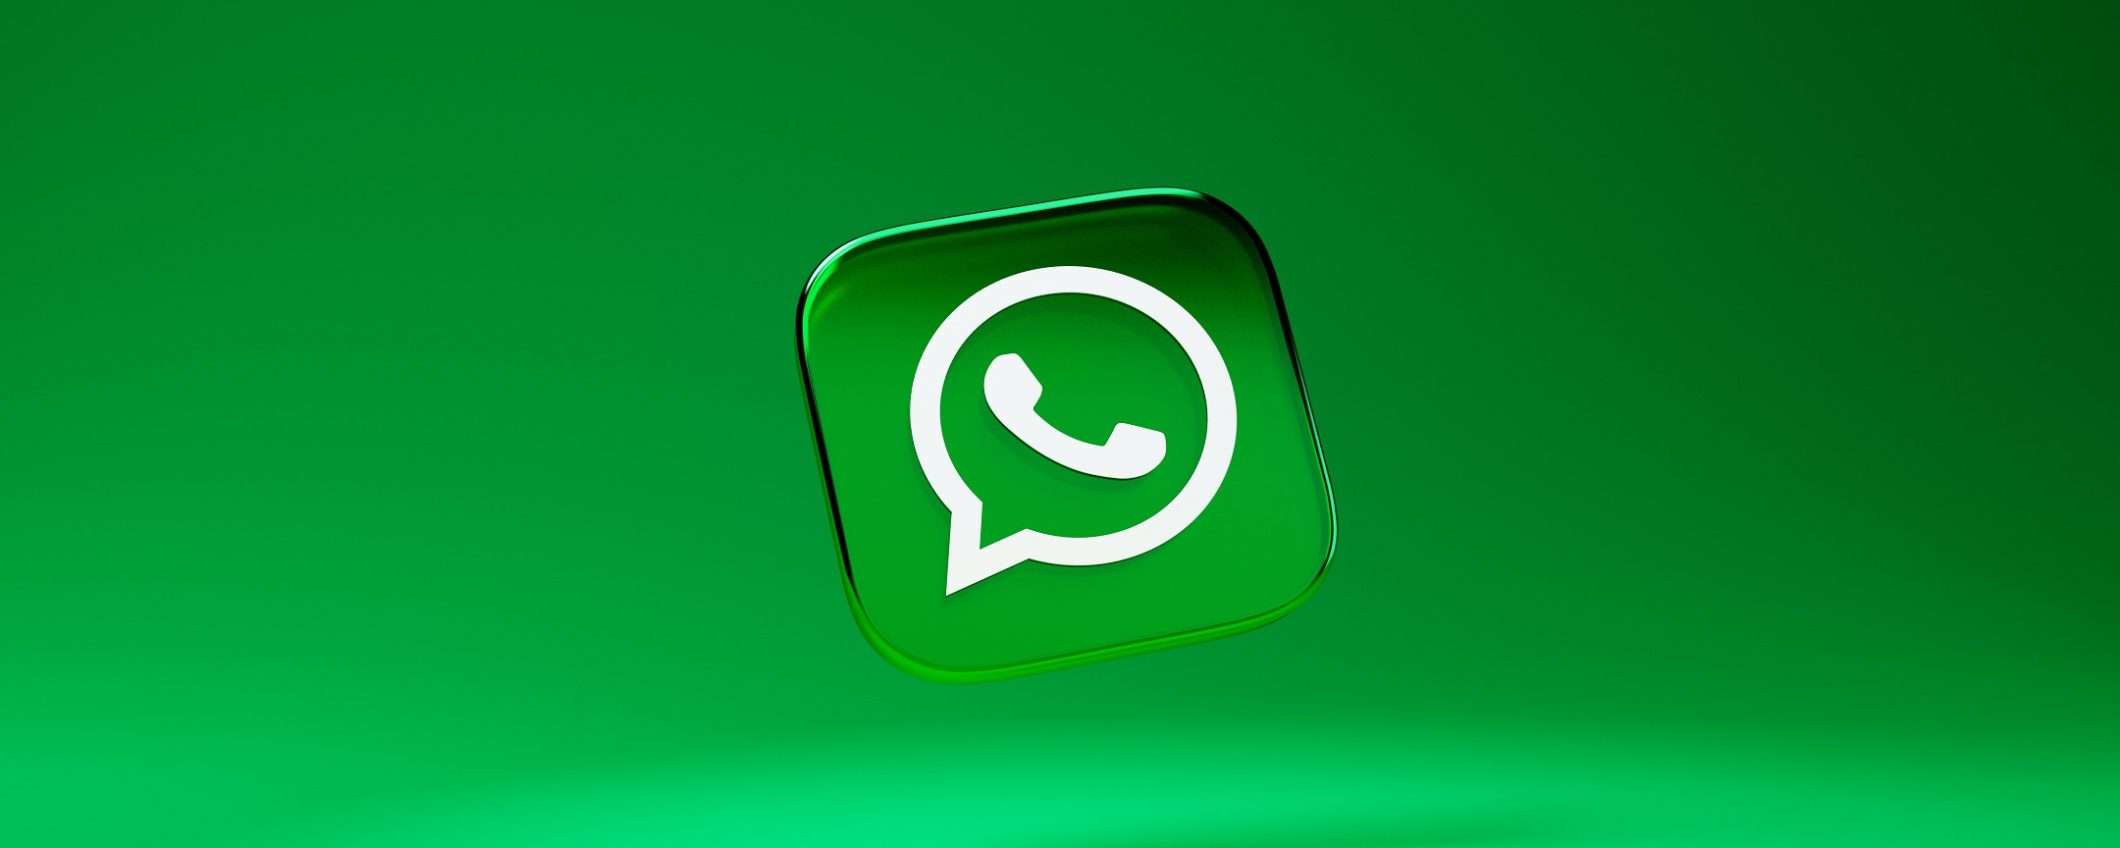 WhatsApp: arrivano i videomessaggi nelle chat, come funzionano?